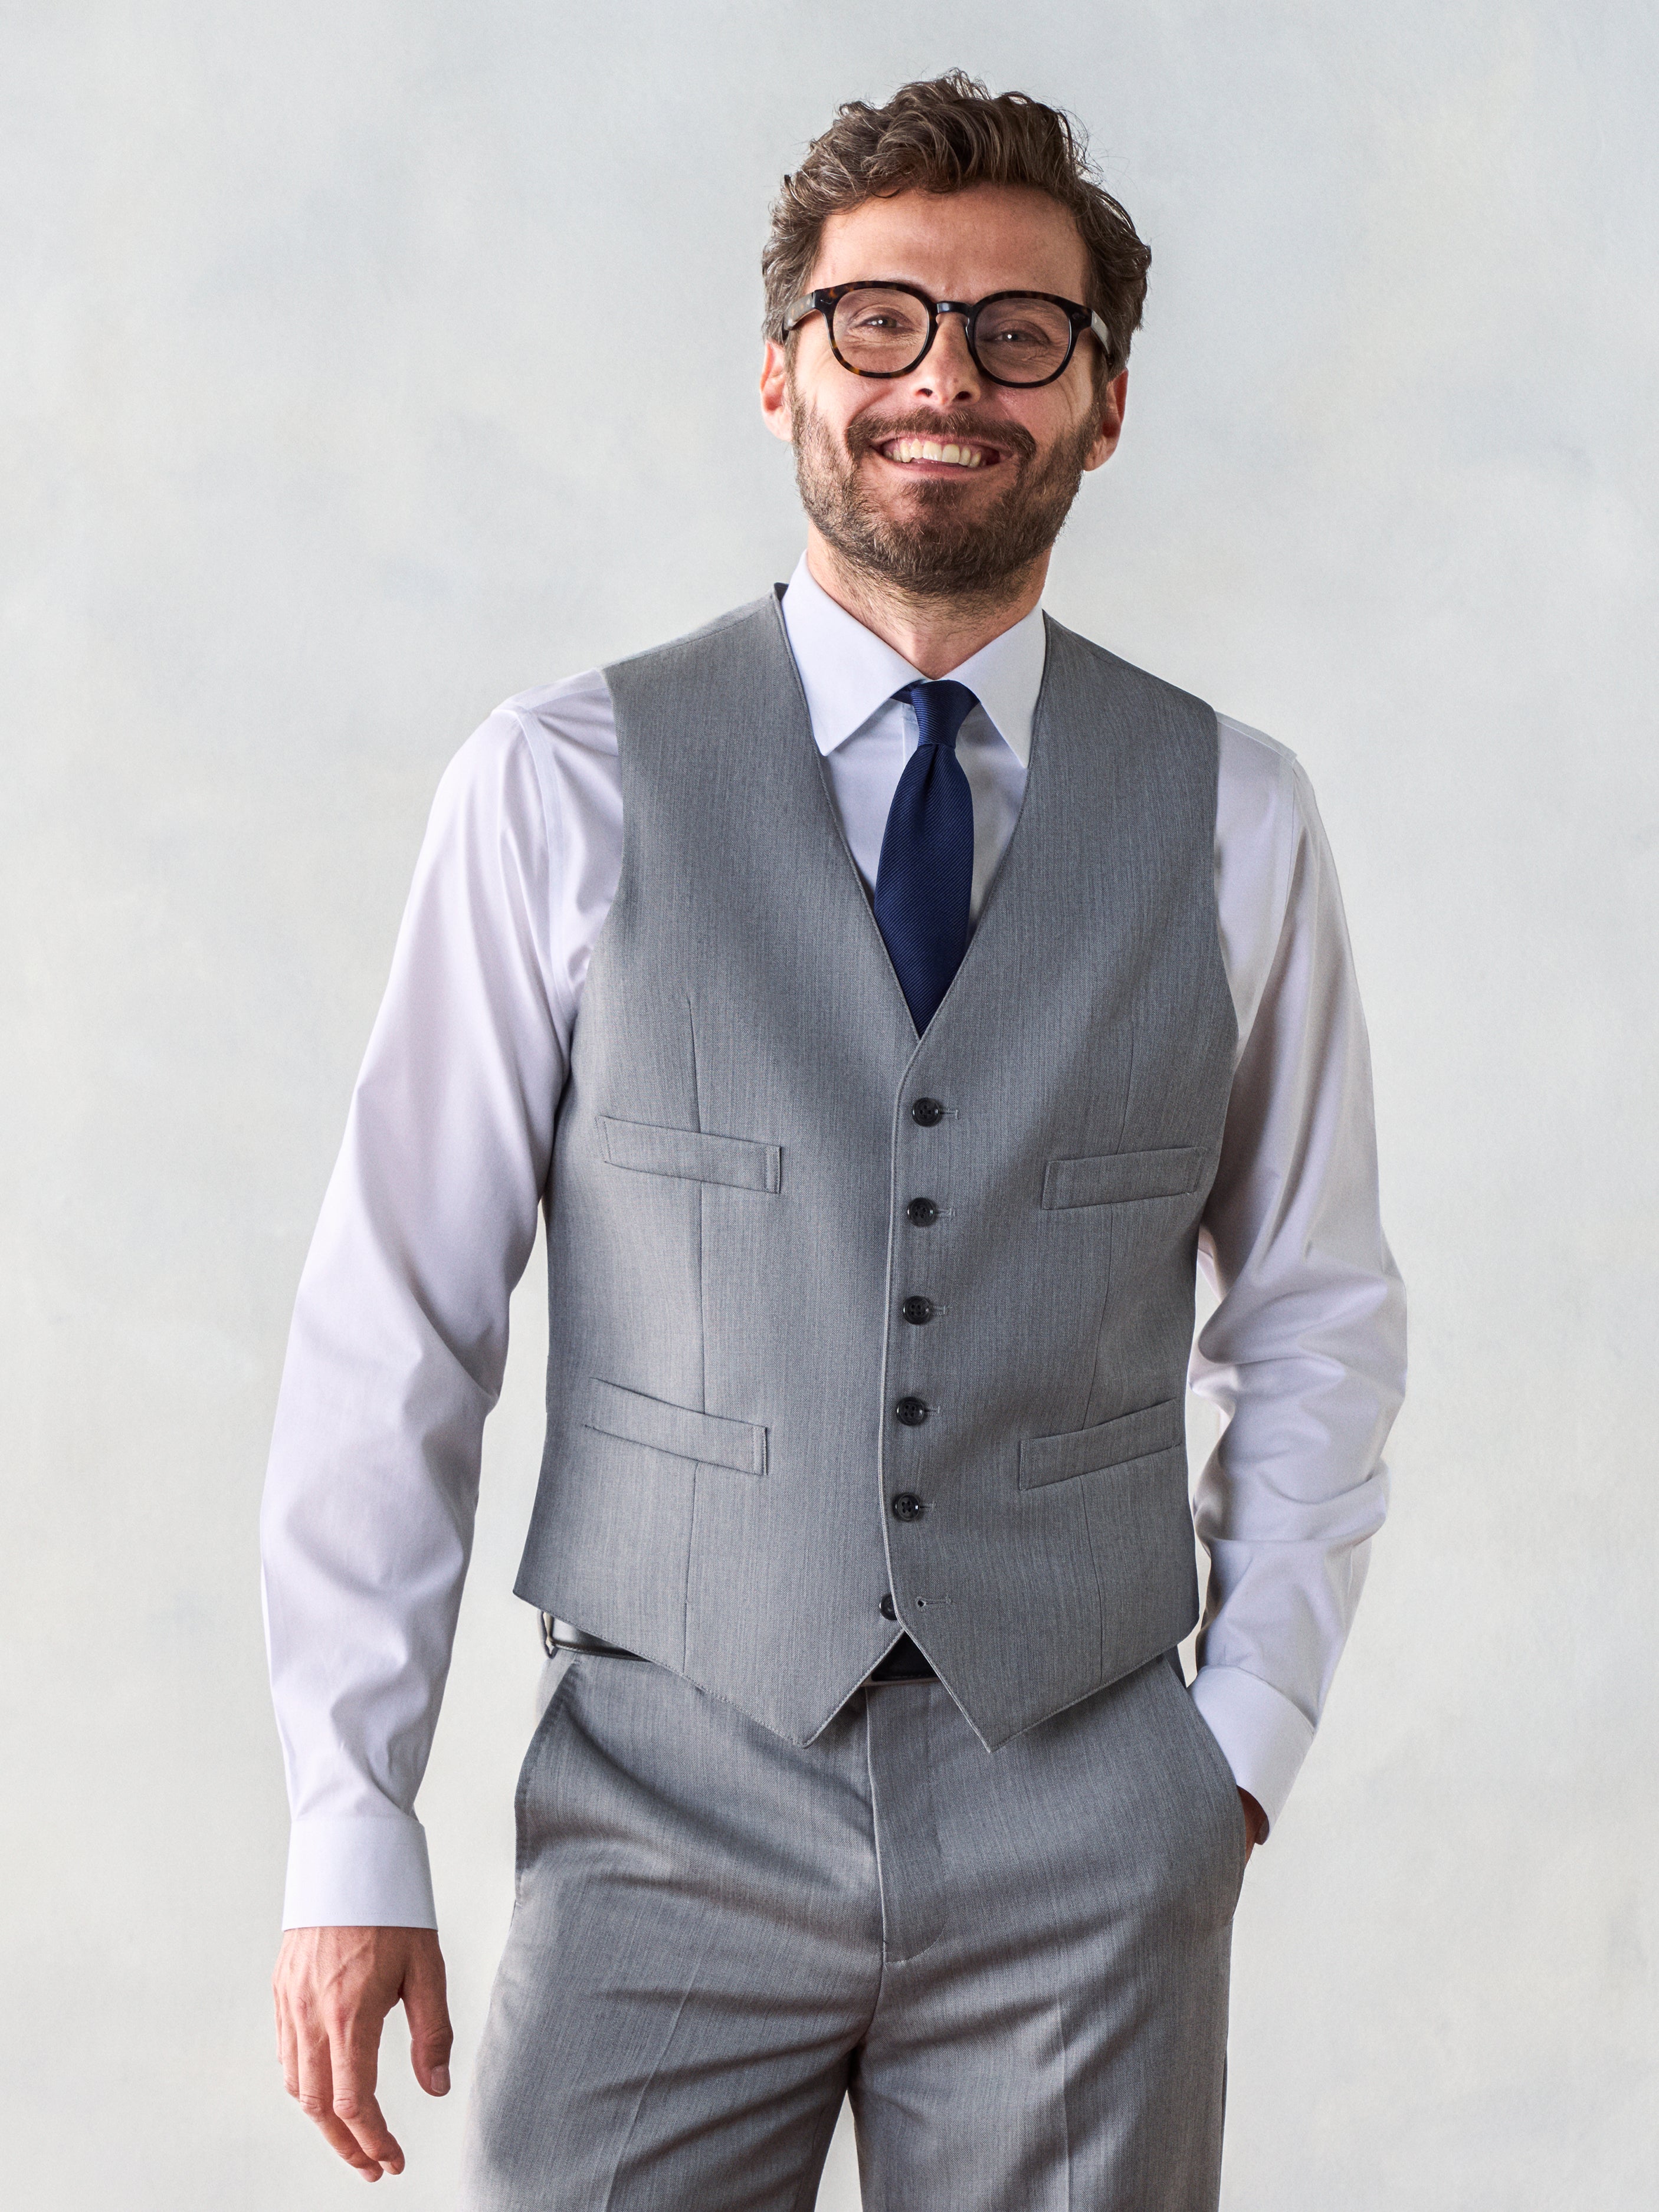 Buy MEN GREY SUIT Men Wedding Suit Three Piece Suit Formal Fashion Suit Men  Party Suit Suit for Men Slim Fit Suit Men Stylish Suit Online in India -  Etsy